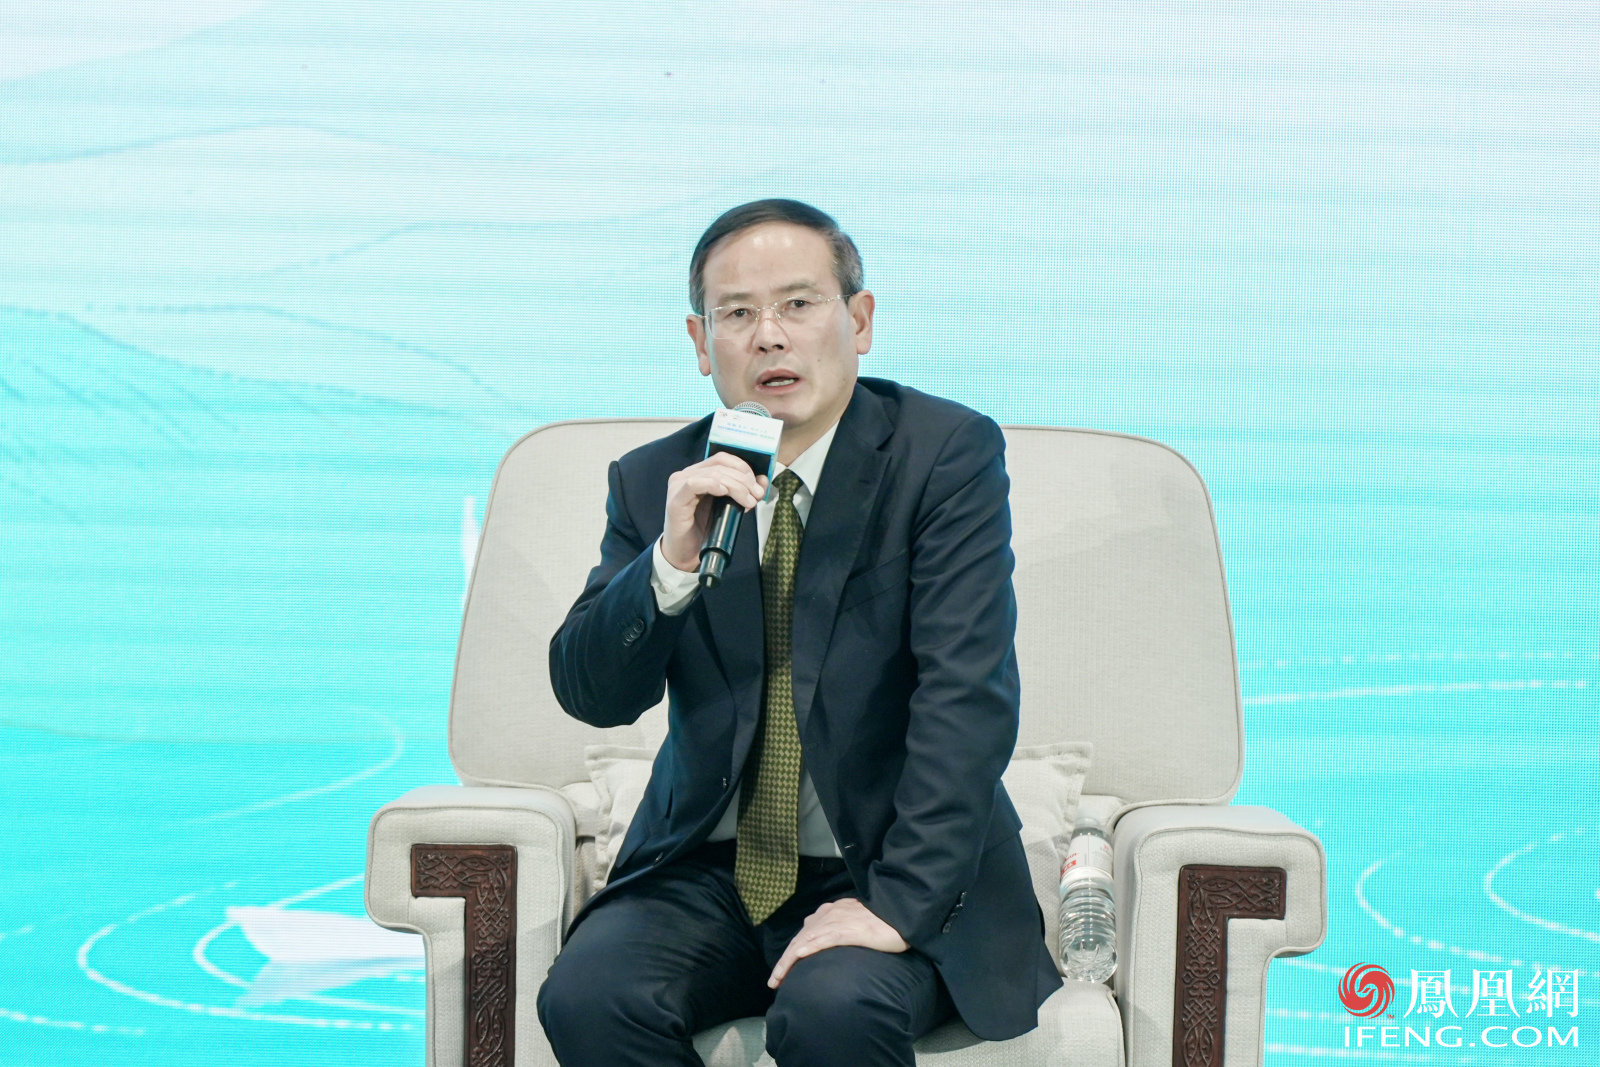 重庆市文化和旅游发展委员会党委委员、副主任秦定波：研学旅行将呈现稳健、快速发展的新态势